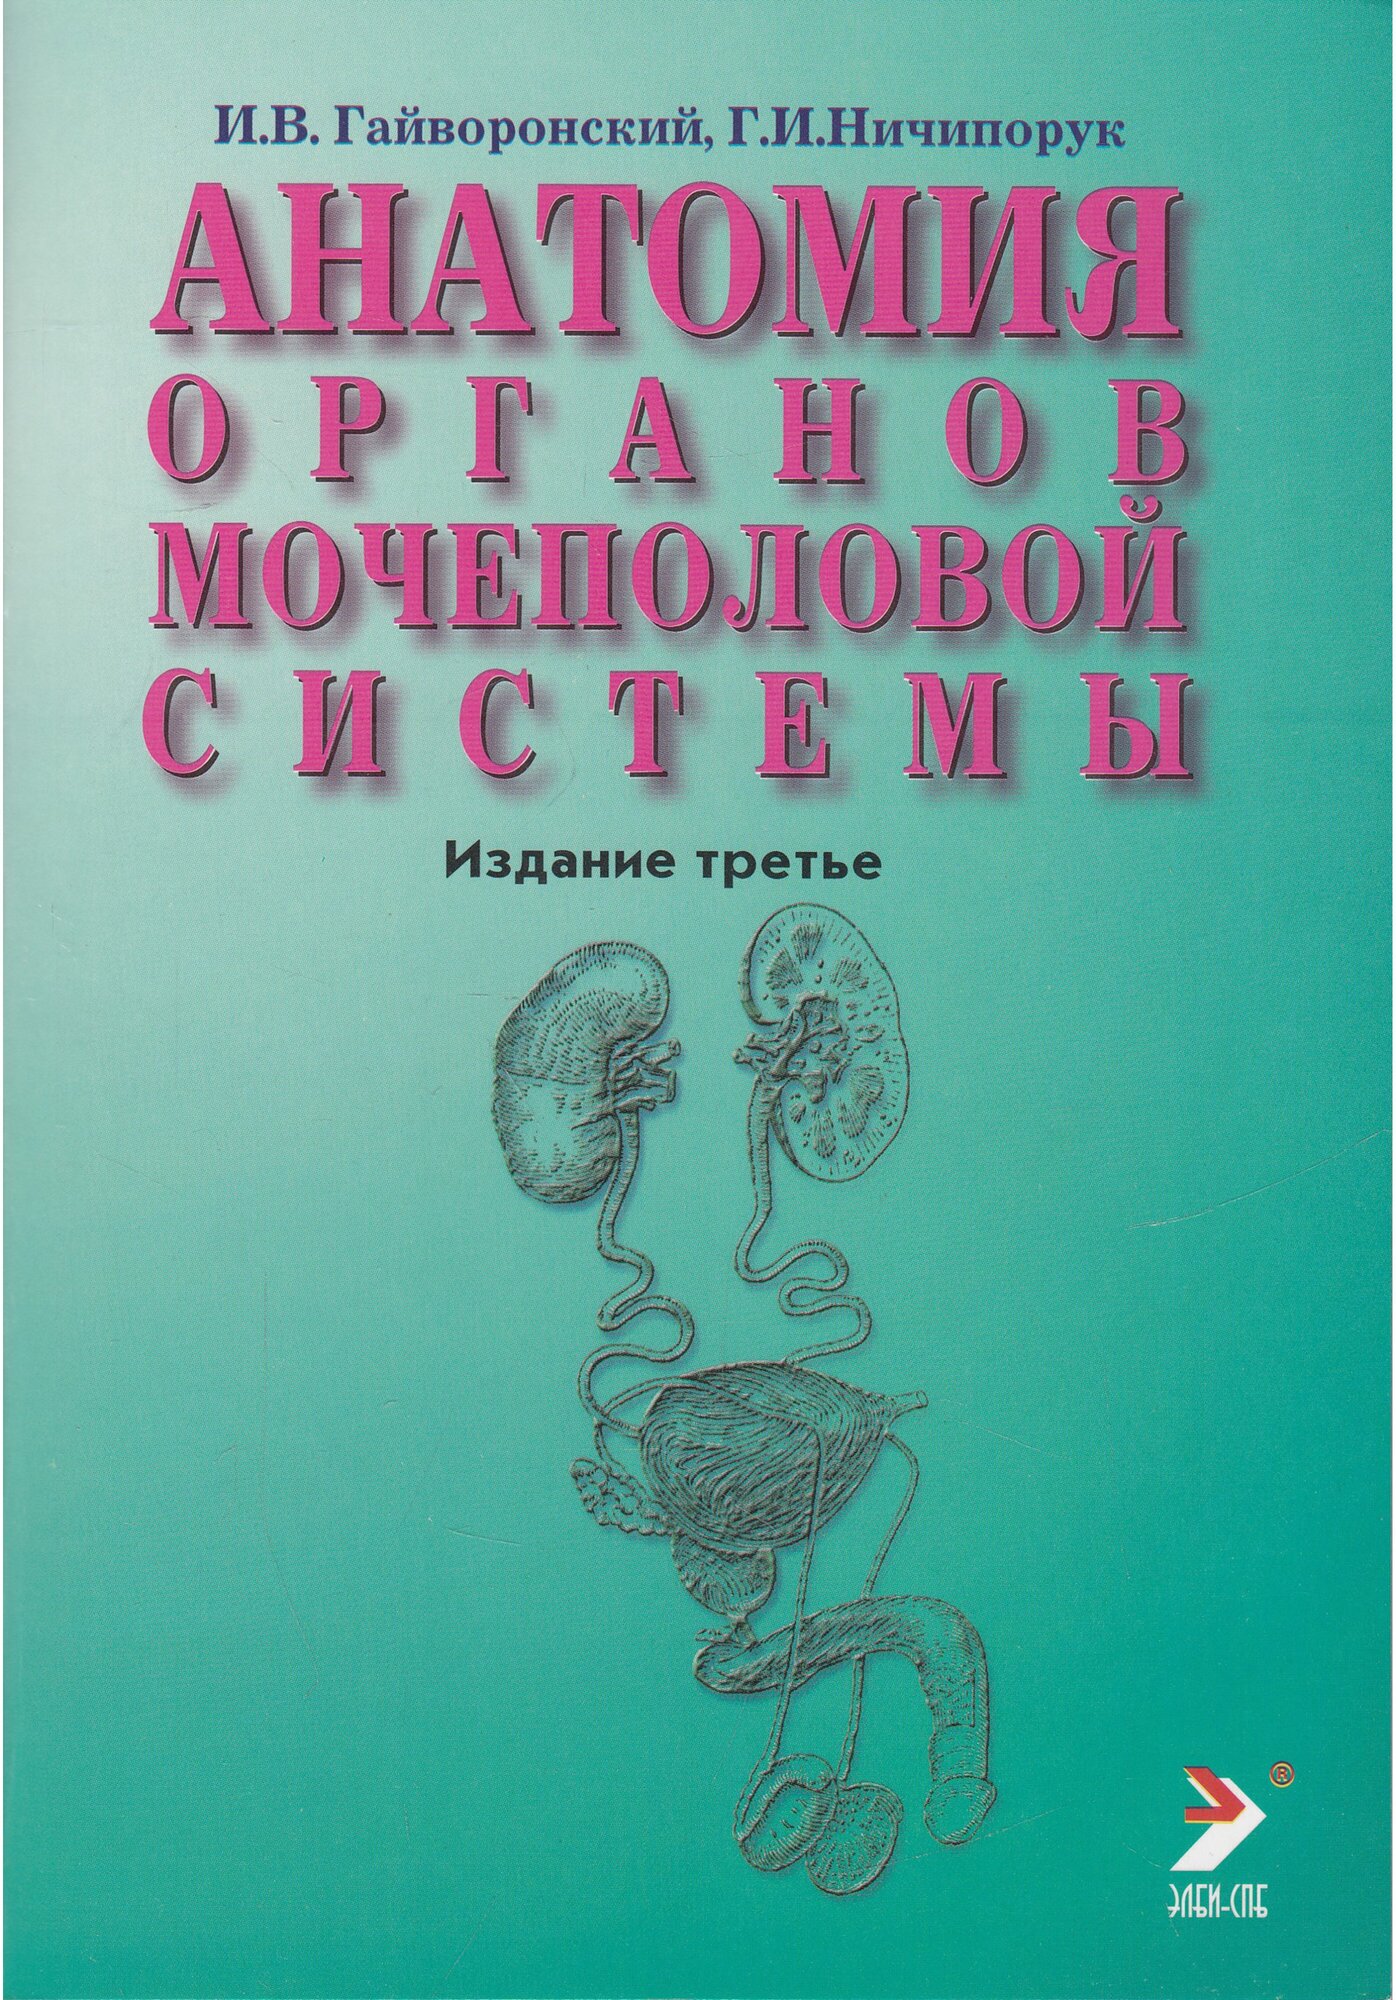 Гайворонский И. В. "Анатомия органов мочеполовой системы. Учебное пособие"